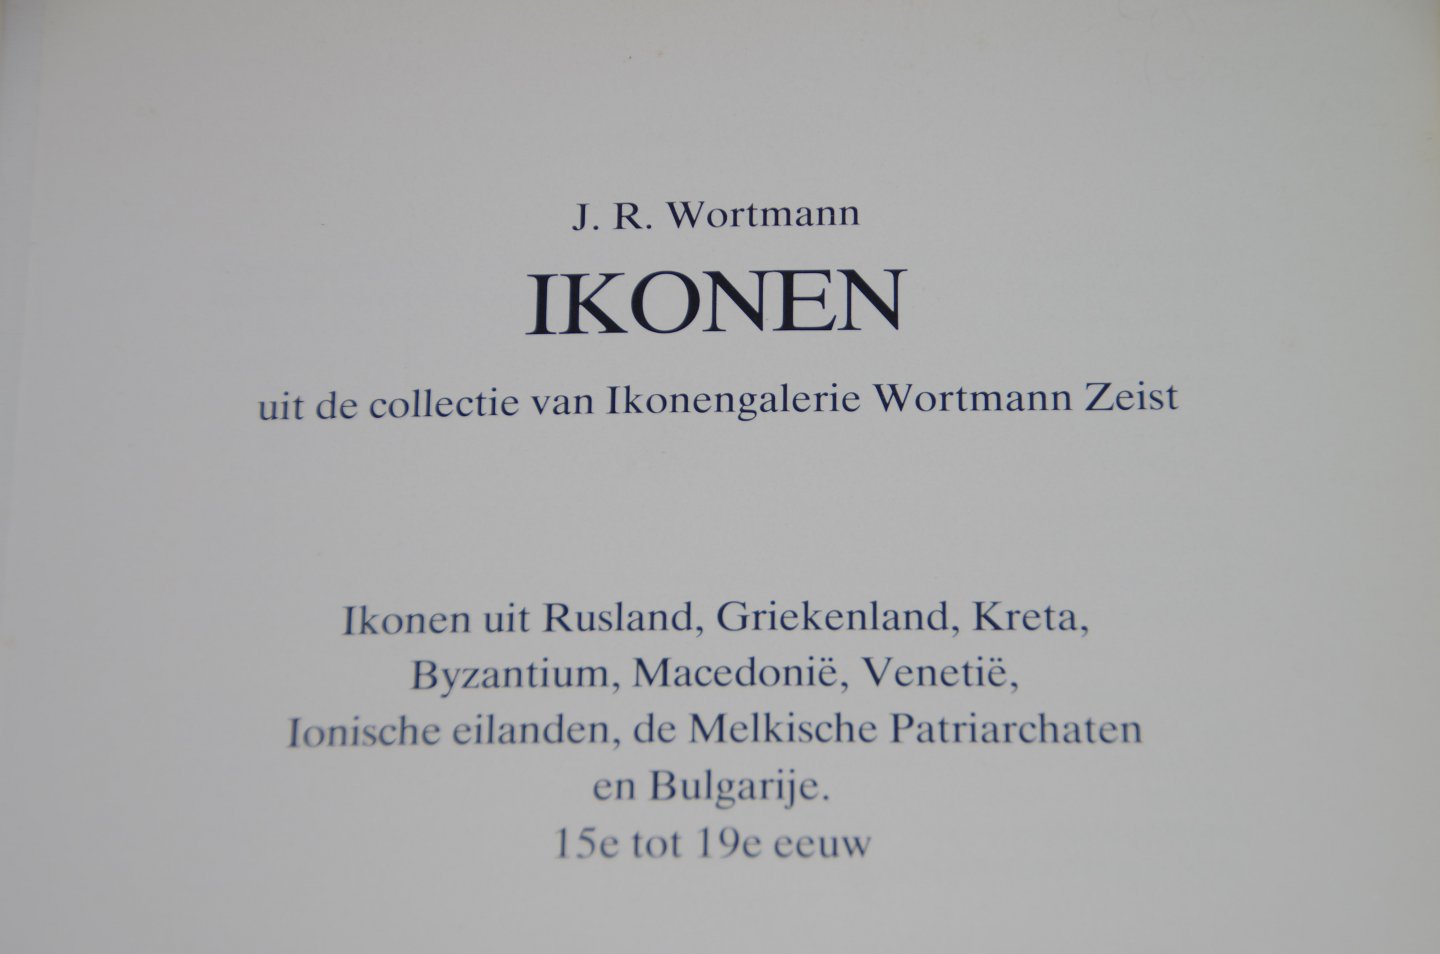 Wortmann - Ikonen uit de collectie ikonengalerie / druk 1